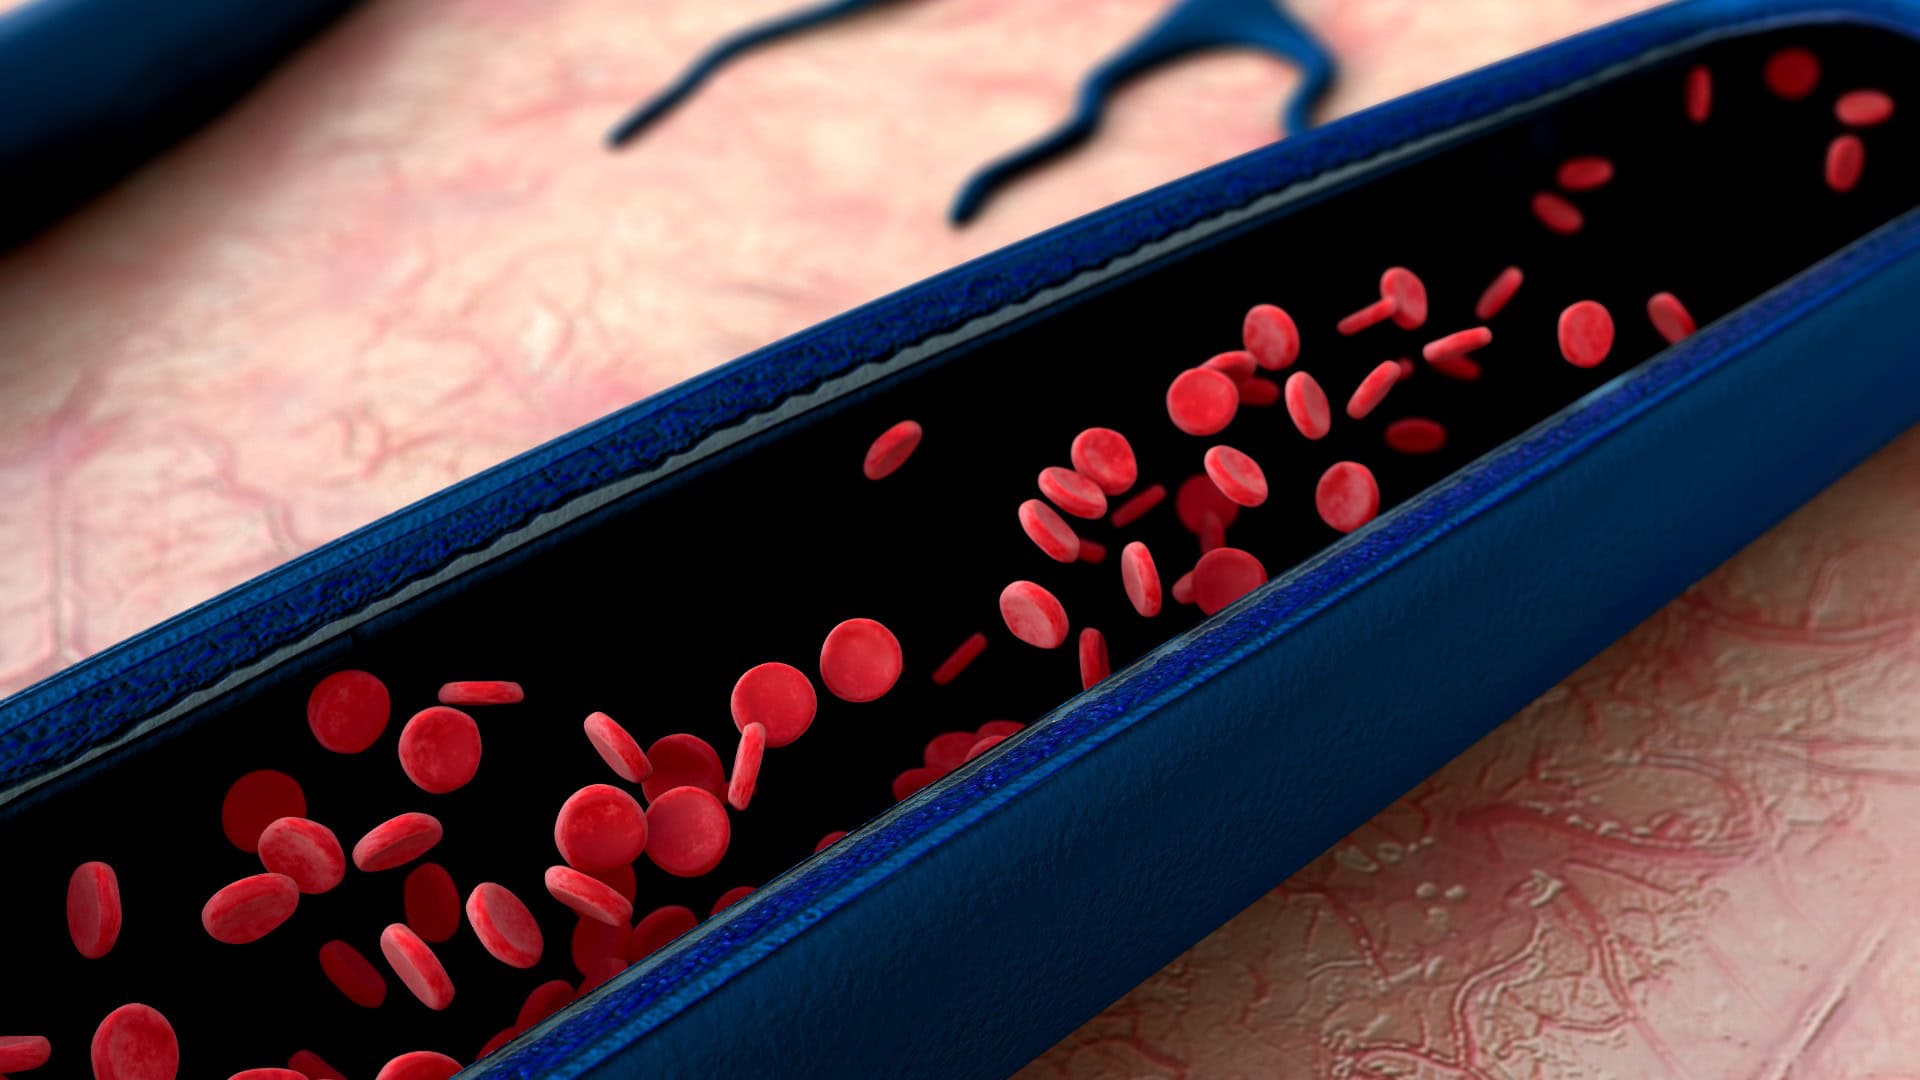 cervene krvinky